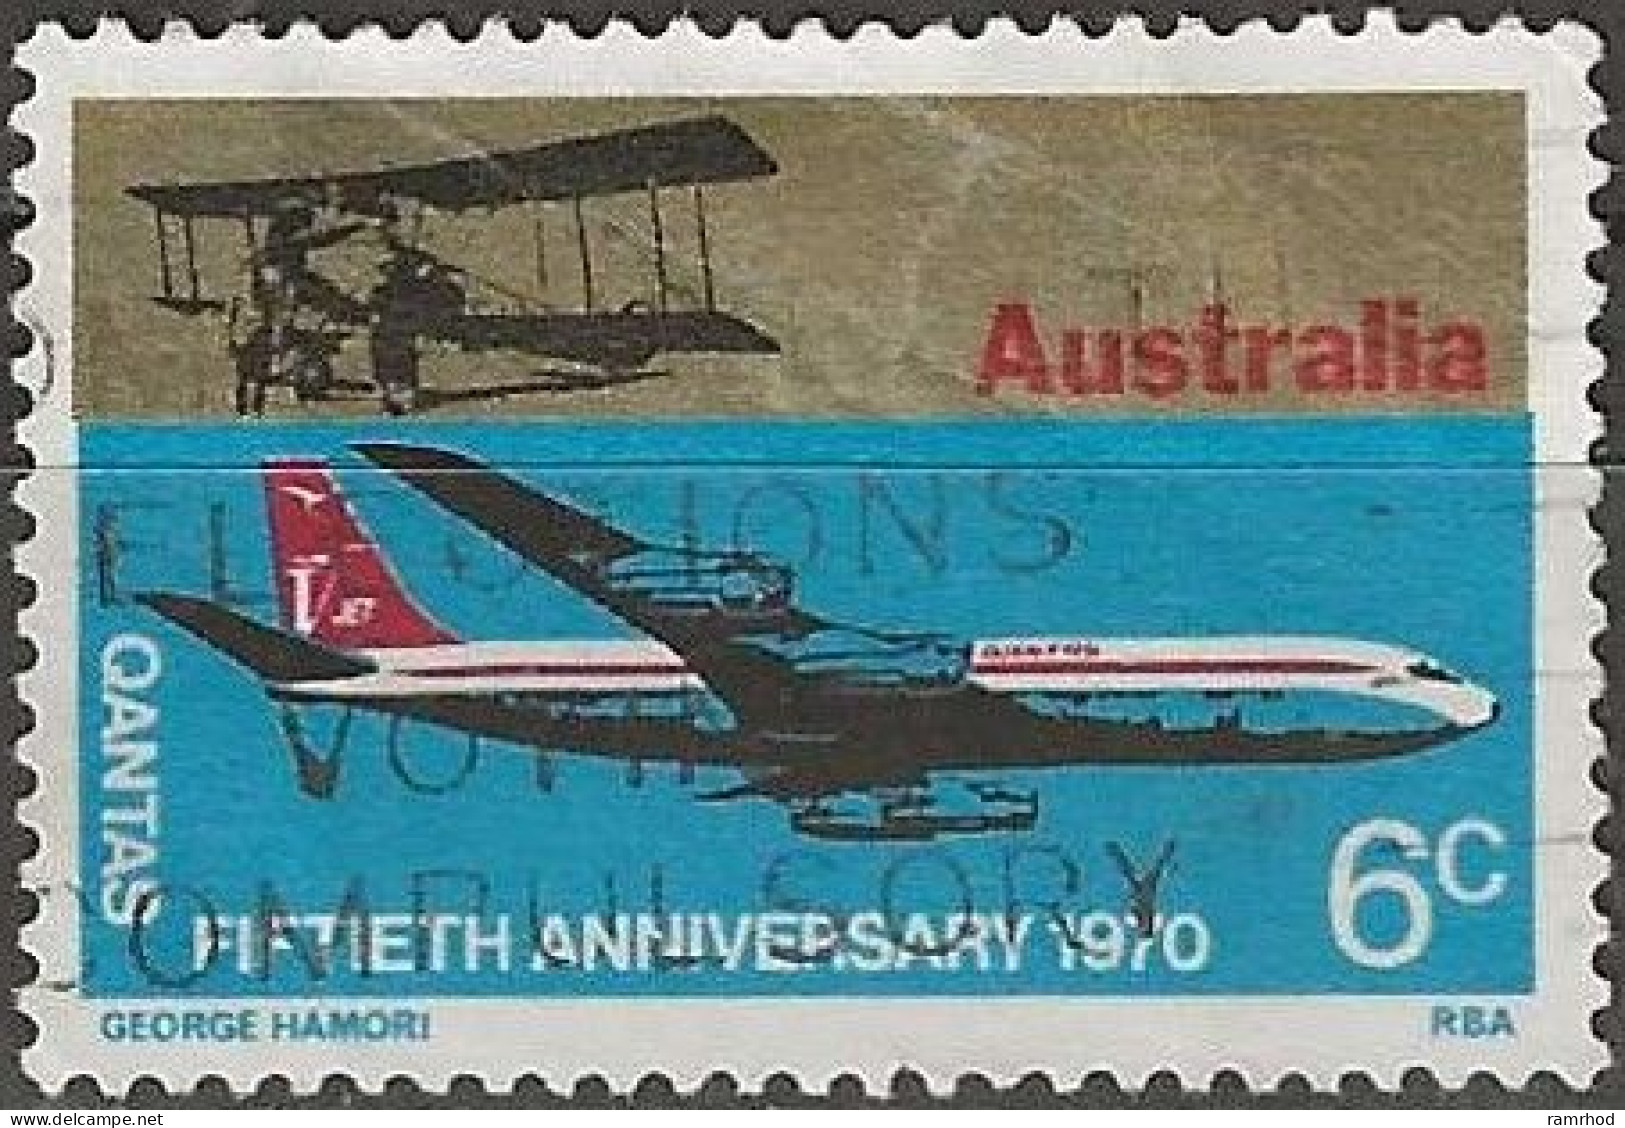 AUSTRALIA 1970 50th Anniversary Of QANTAS Airline - 6c Boeing 707 And Avro 504 FU - Gebruikt